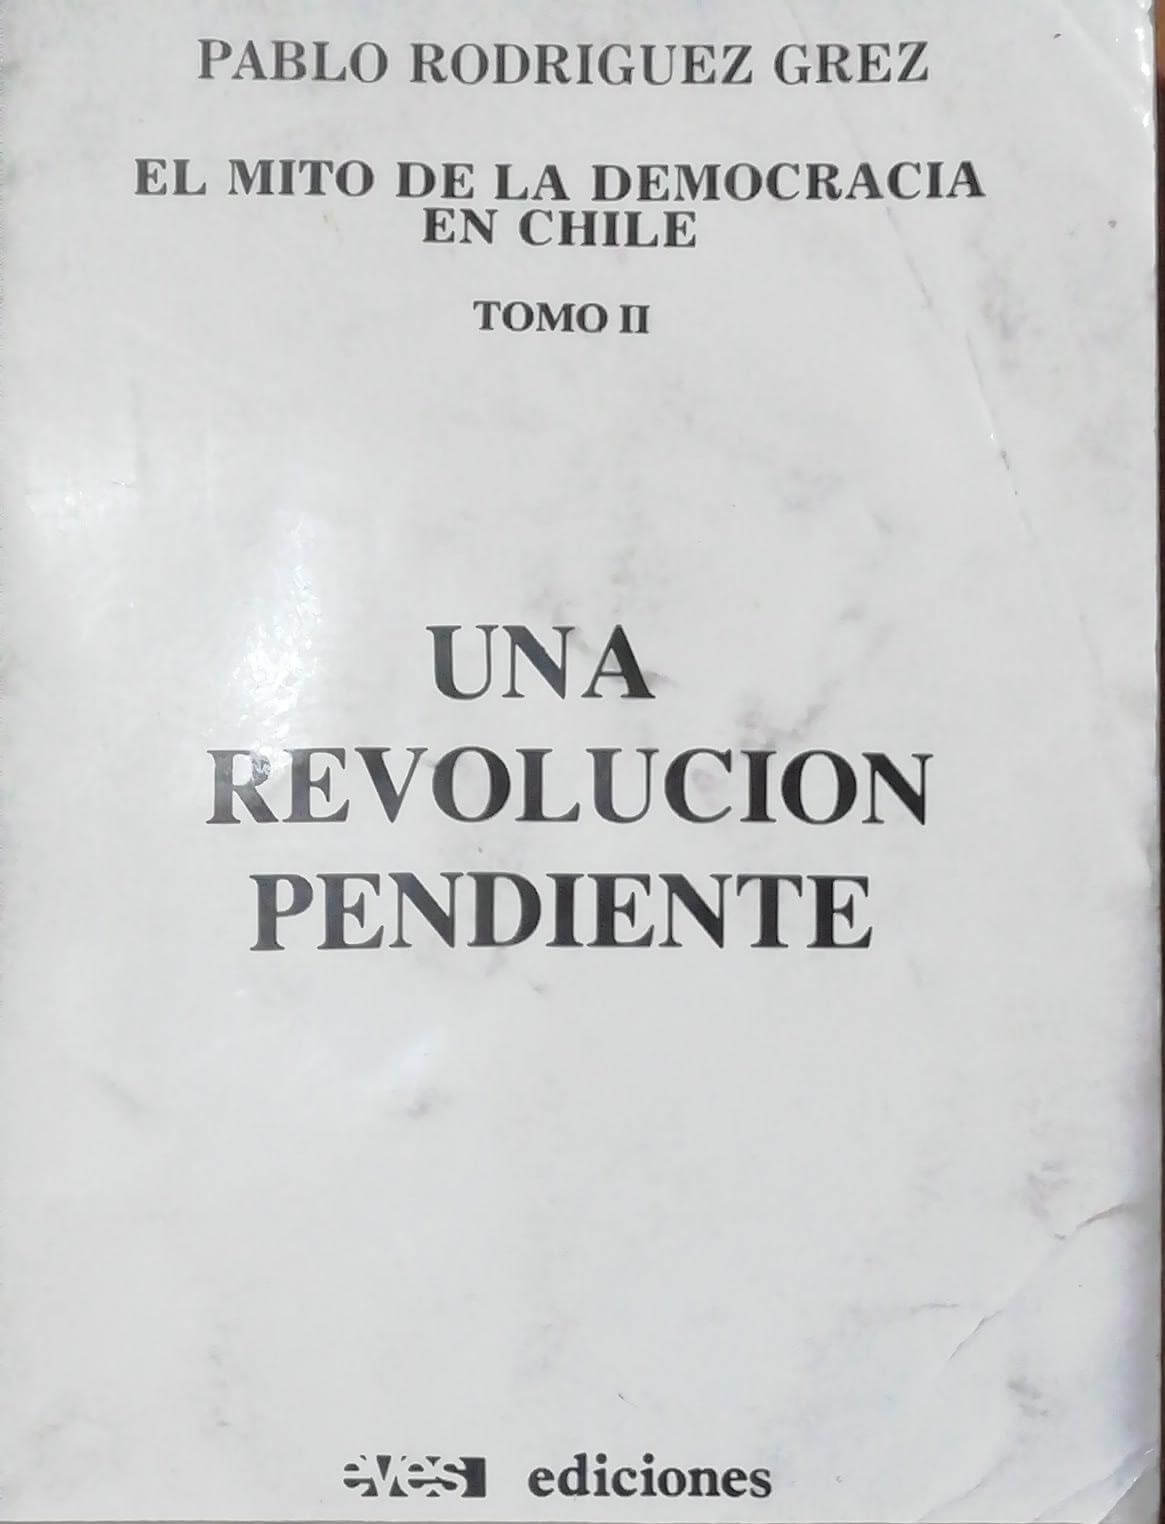 El Mito de la Democracia en Chile, Tomo II